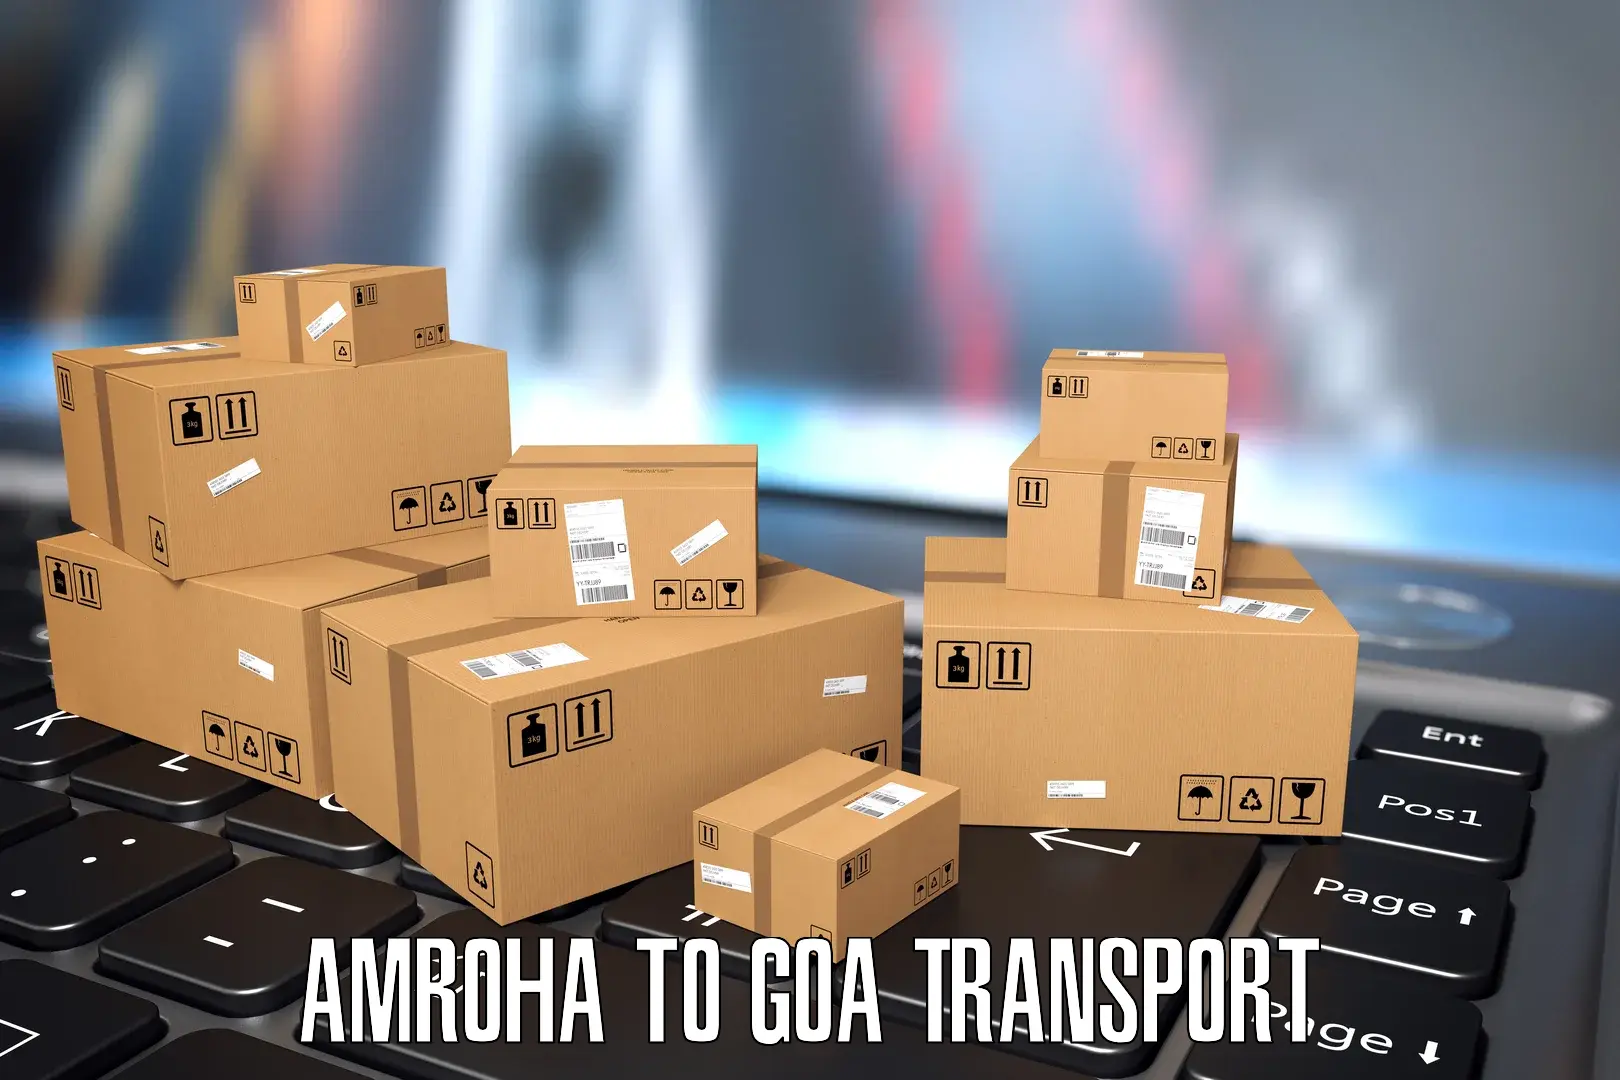 Furniture transport service Amroha to Vasco da Gama